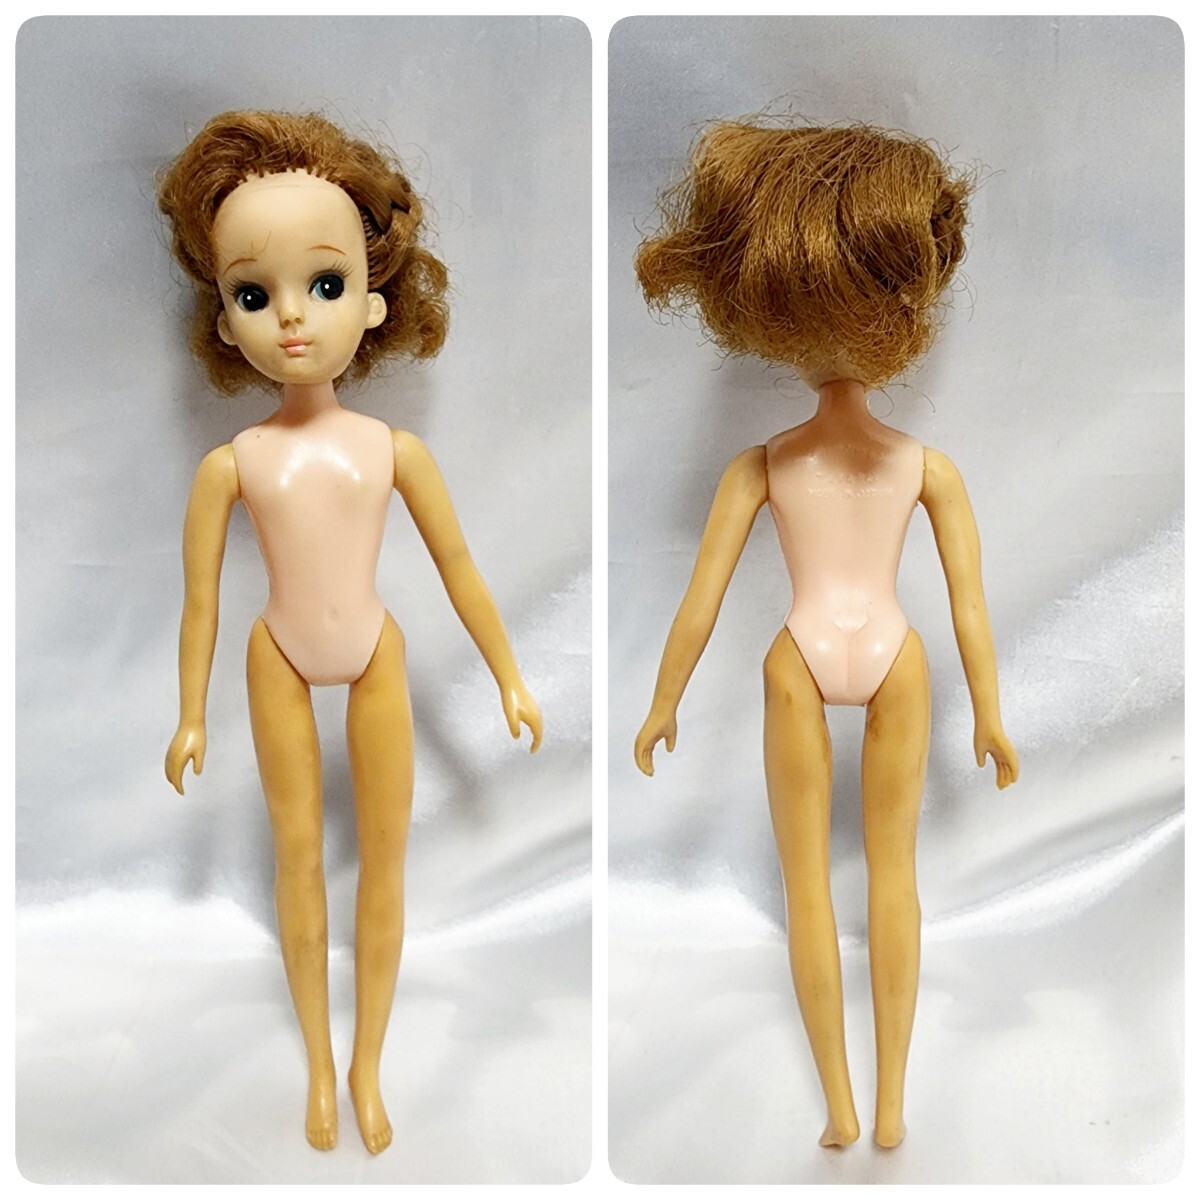 タカラ 初期 初代 リカちゃん ドット刻印 当時 着せ替え 人形 おへそあり TAKARA レア ヴィンテージの画像3